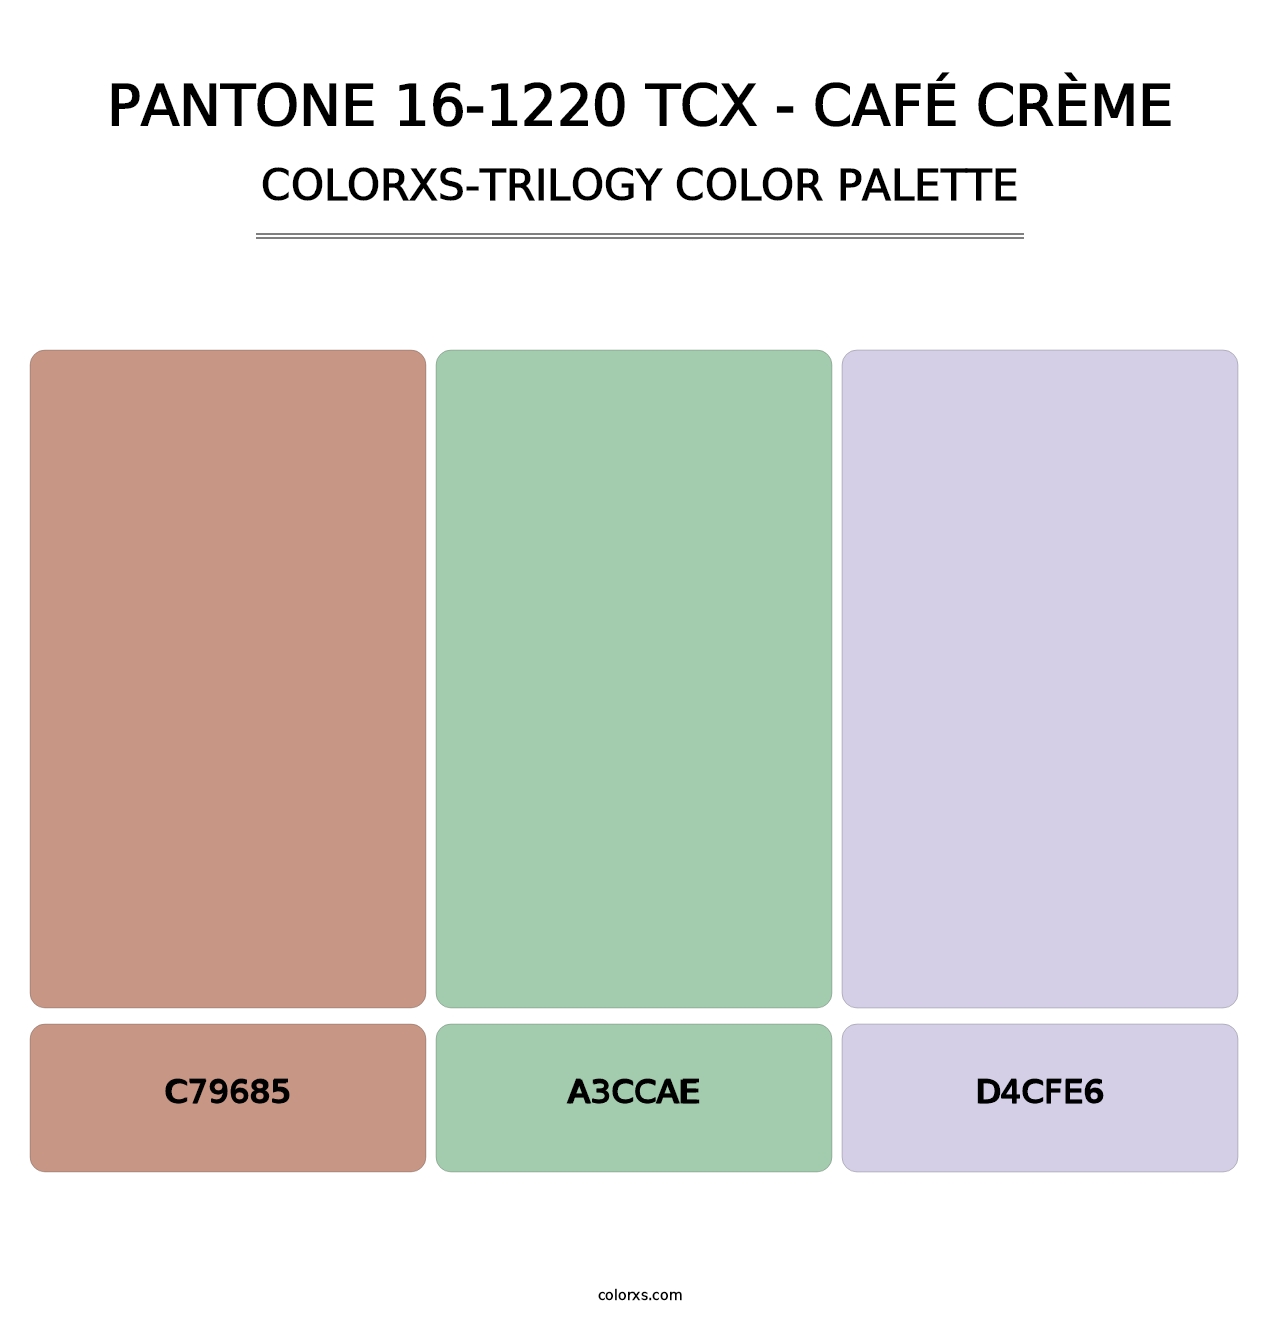 PANTONE 16-1220 TCX - Café Crème - Colorxs Trilogy Palette